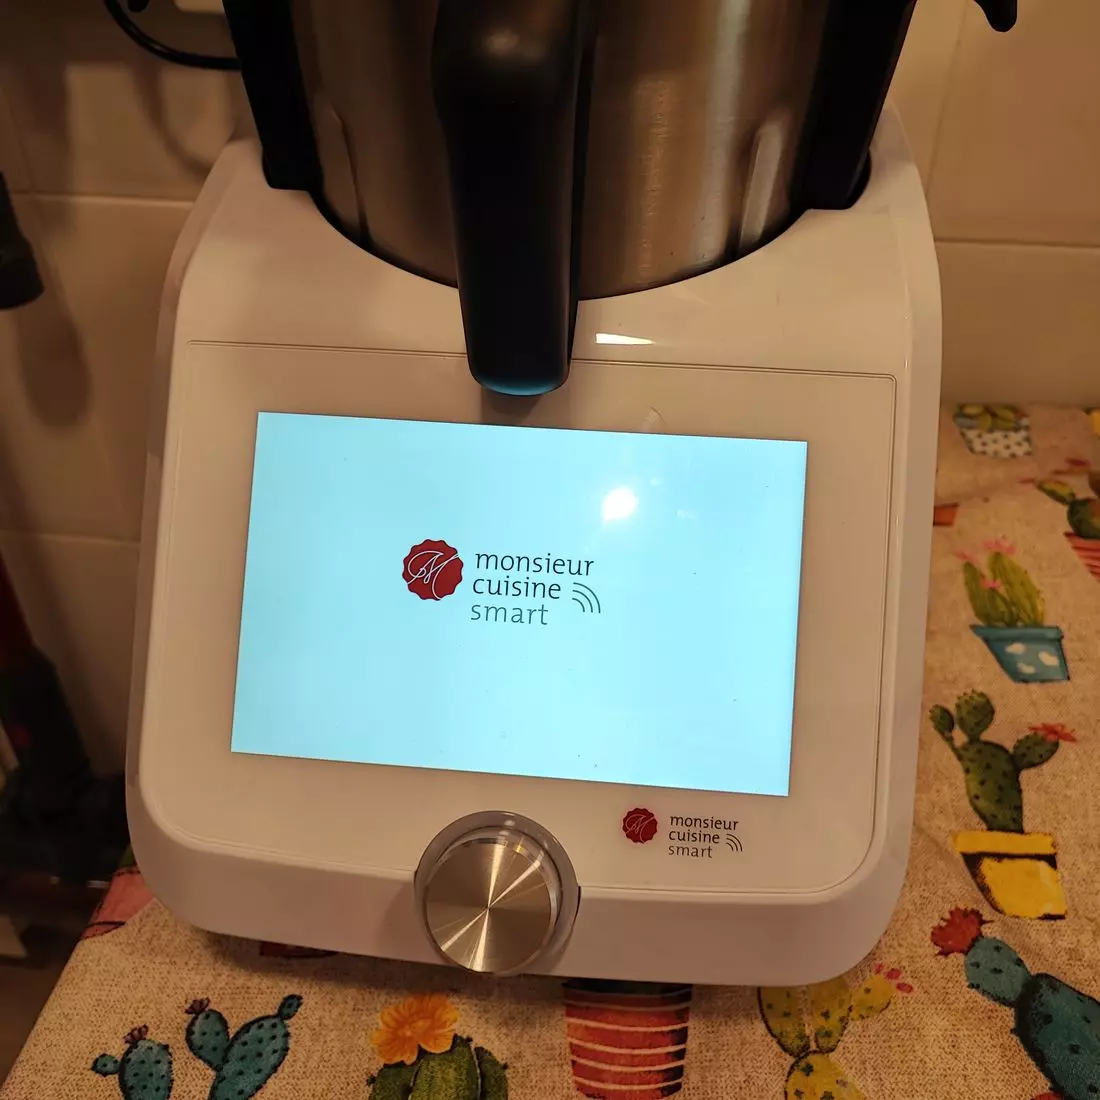 El robot de cocina de Lidl: la Thermomix barata, ¿merece la pena?